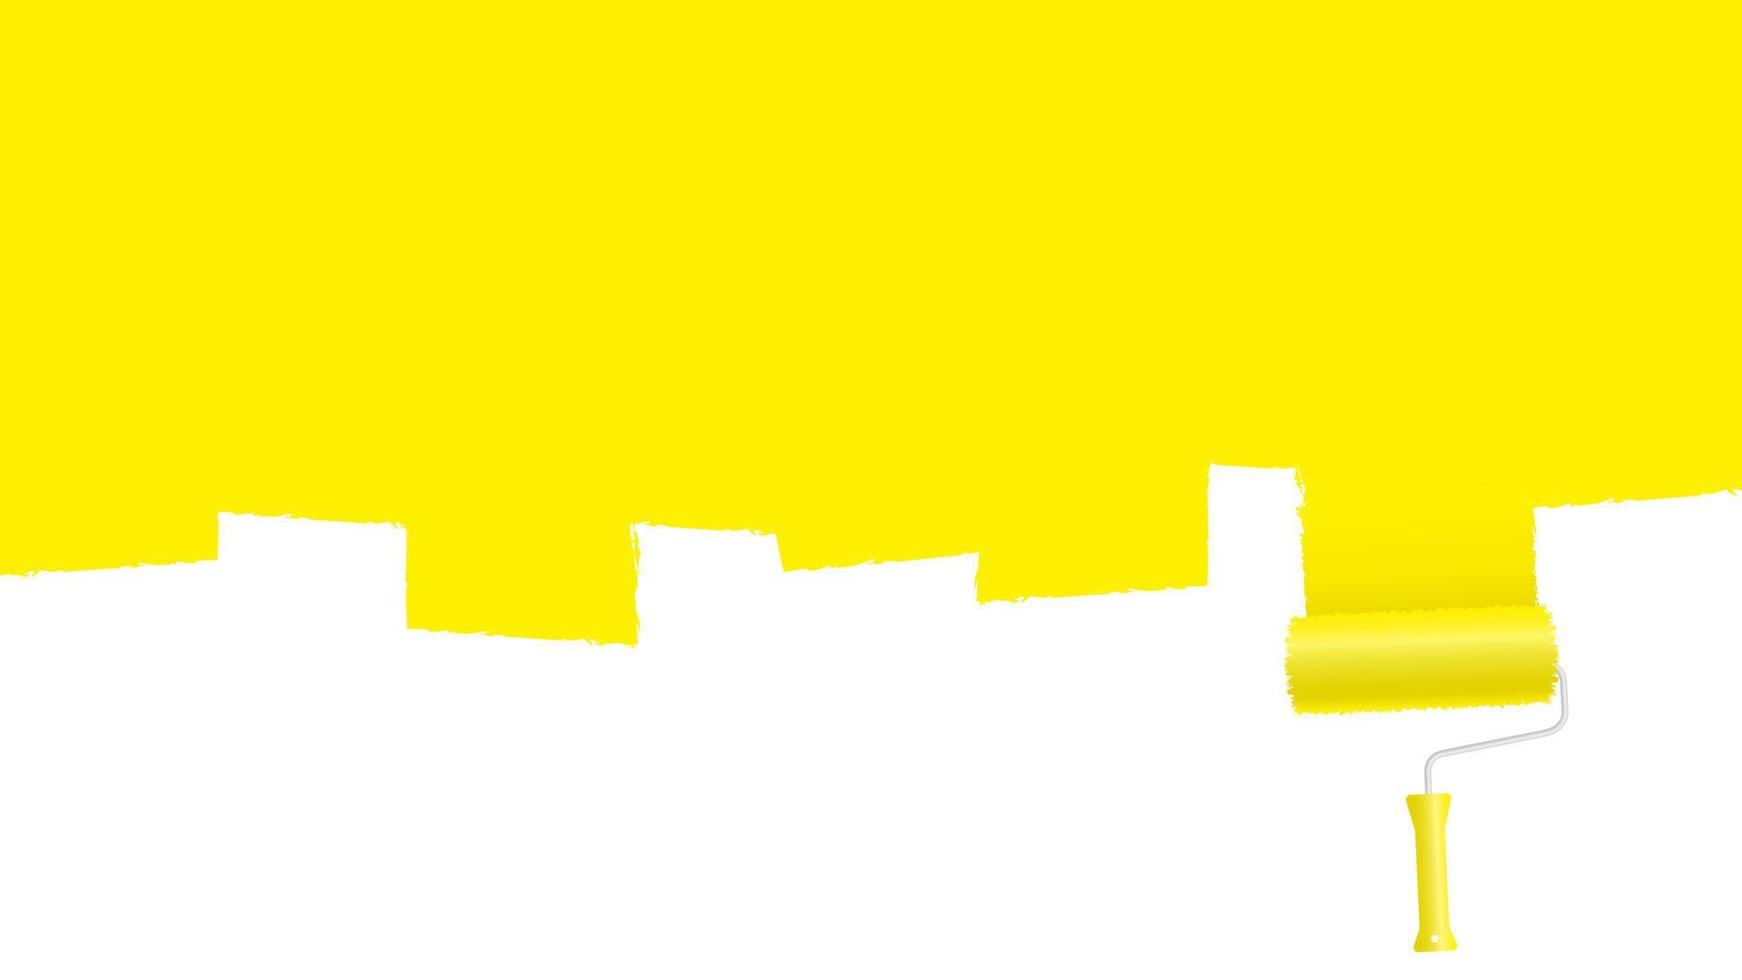 målarrulle målar gul yta banner. kreativ väggmålning i hem- och kontorsrenovering. abstrakt bildkonst av trendig vektorimpressionism vektor